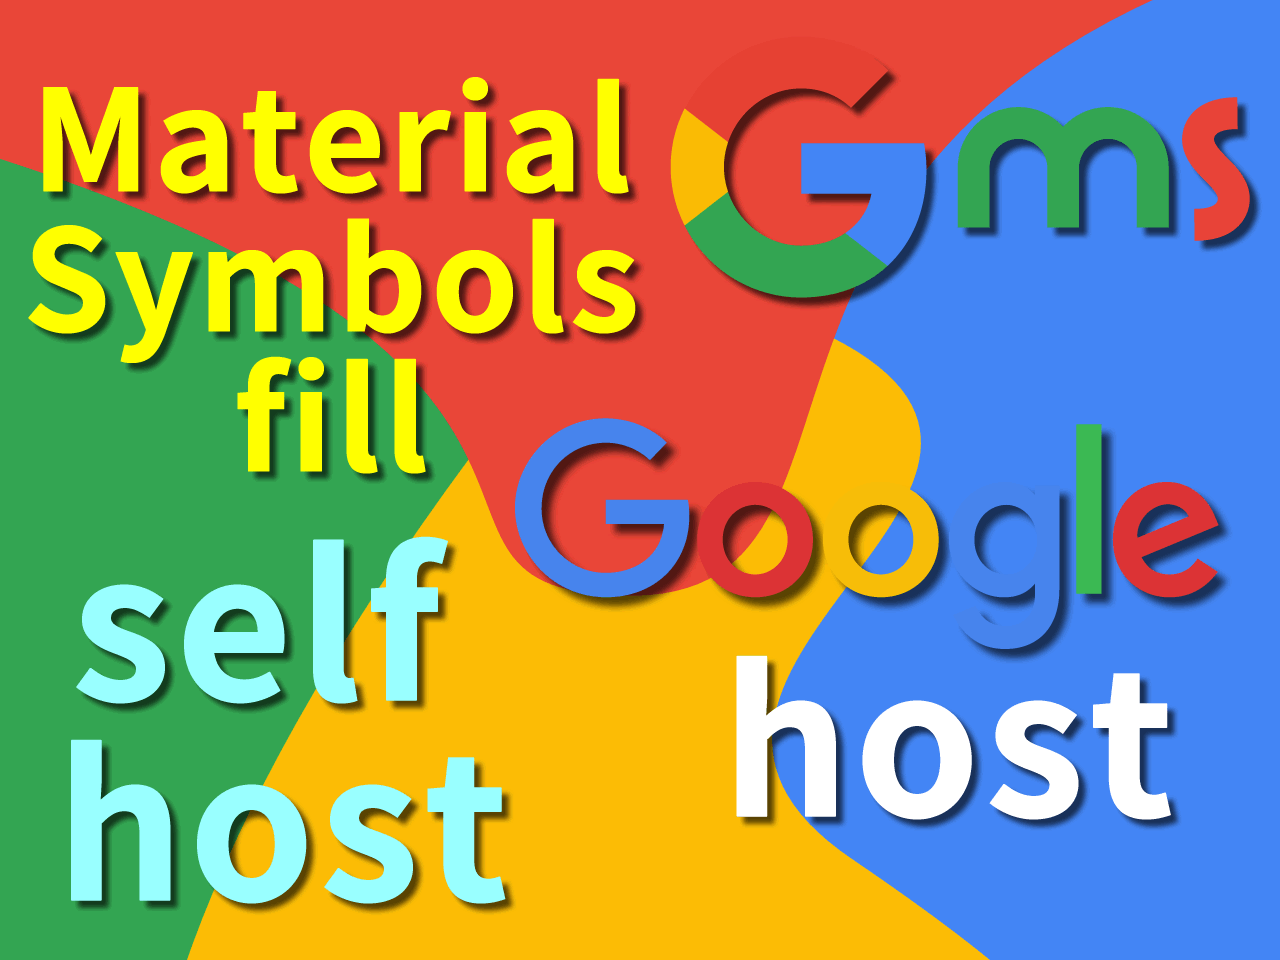 Google Material Symbols最短手順 可変フォントFILL(塗りつぶし) 太字細字あり Googleホスト & セルフ-ホスト CSS アイコンファイル Design